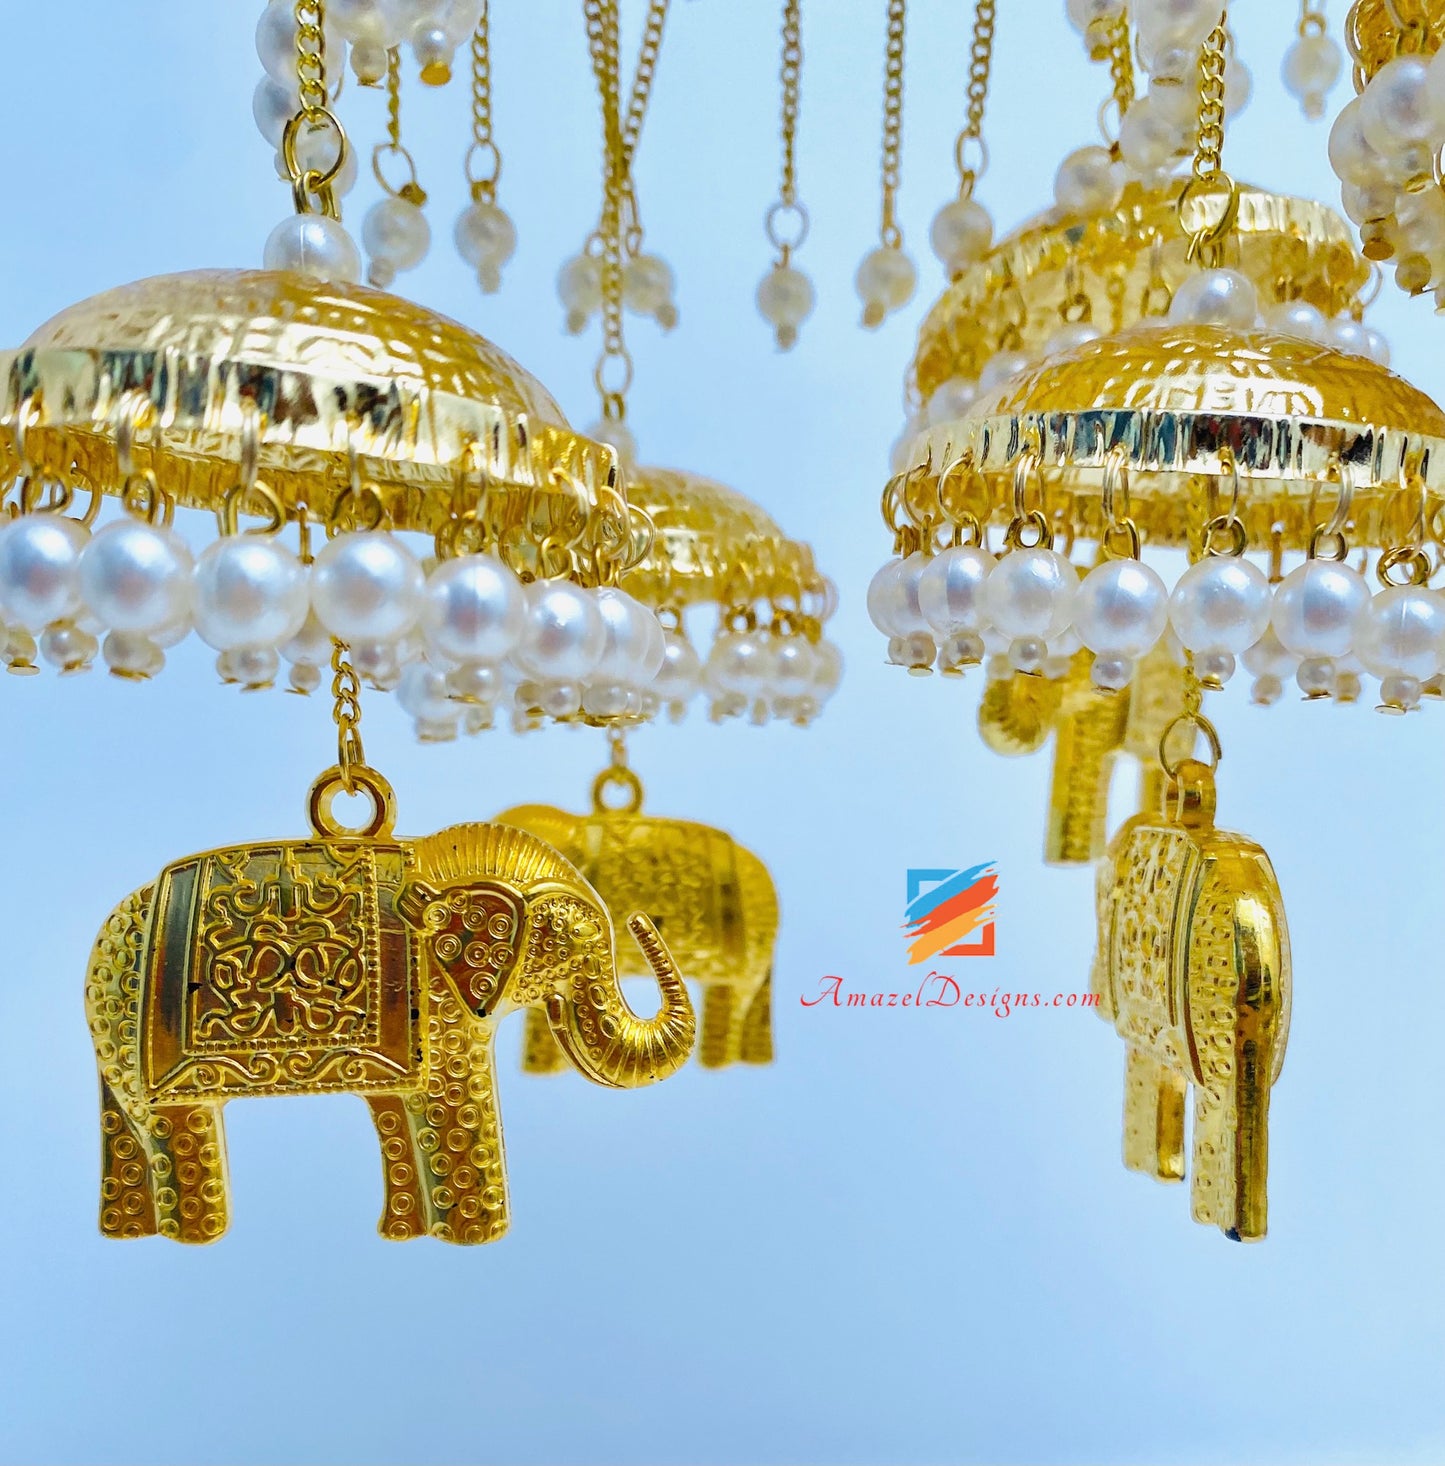 Golden Hathi (Elephant) Kalirey